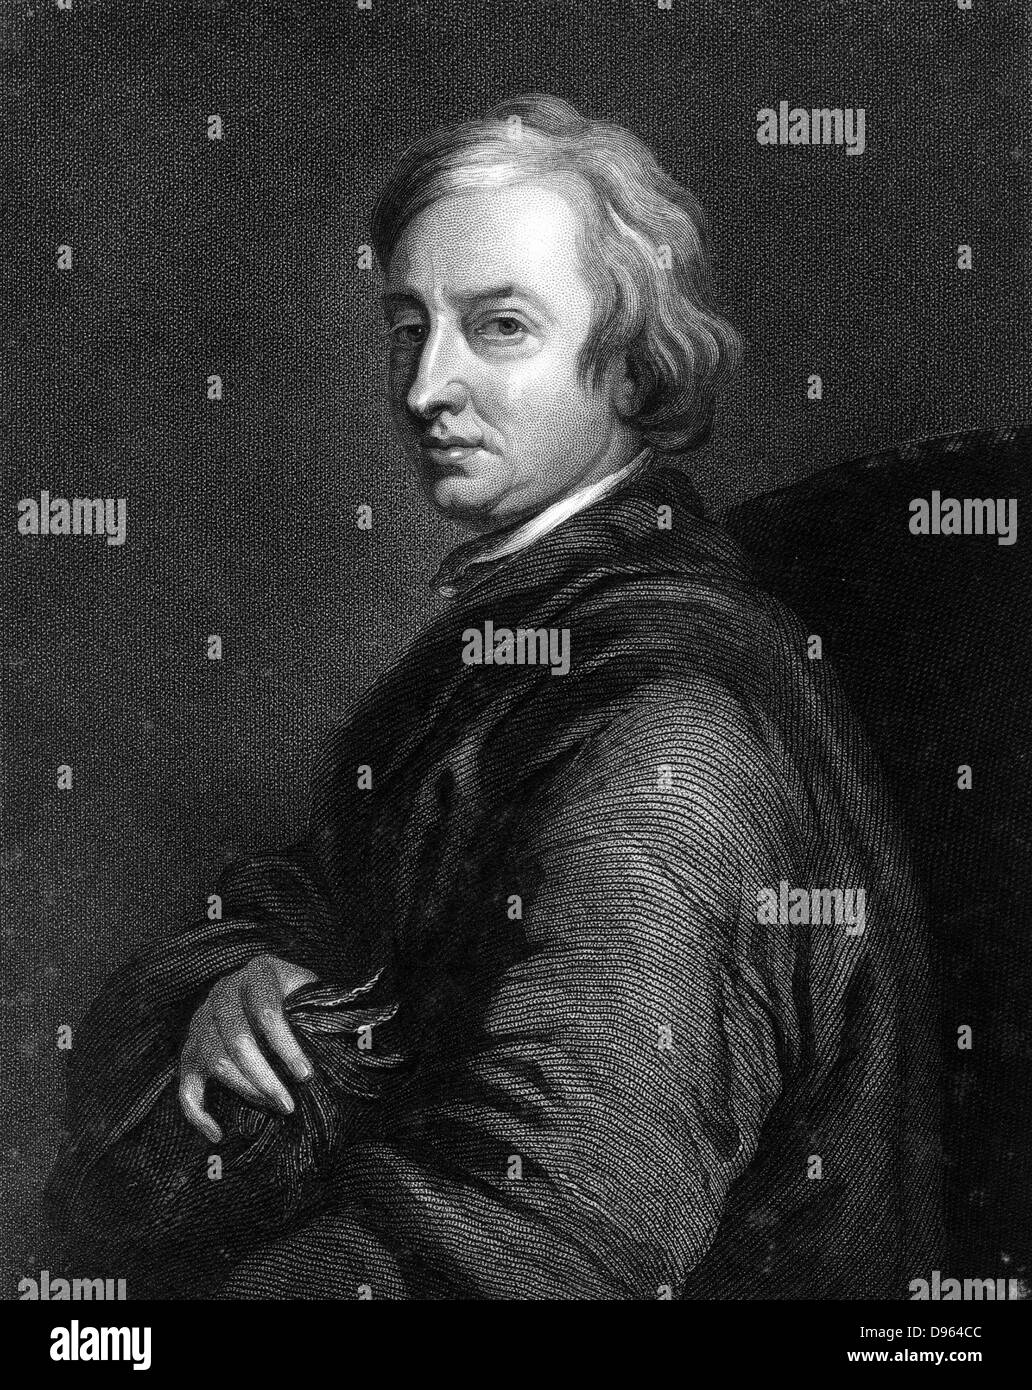 John Dryden (1631-1700) poeta inglese. Poeta laureato 1668. Dopo incisione ritratto da Thomas Hudson (1701-1779). Foto Stock